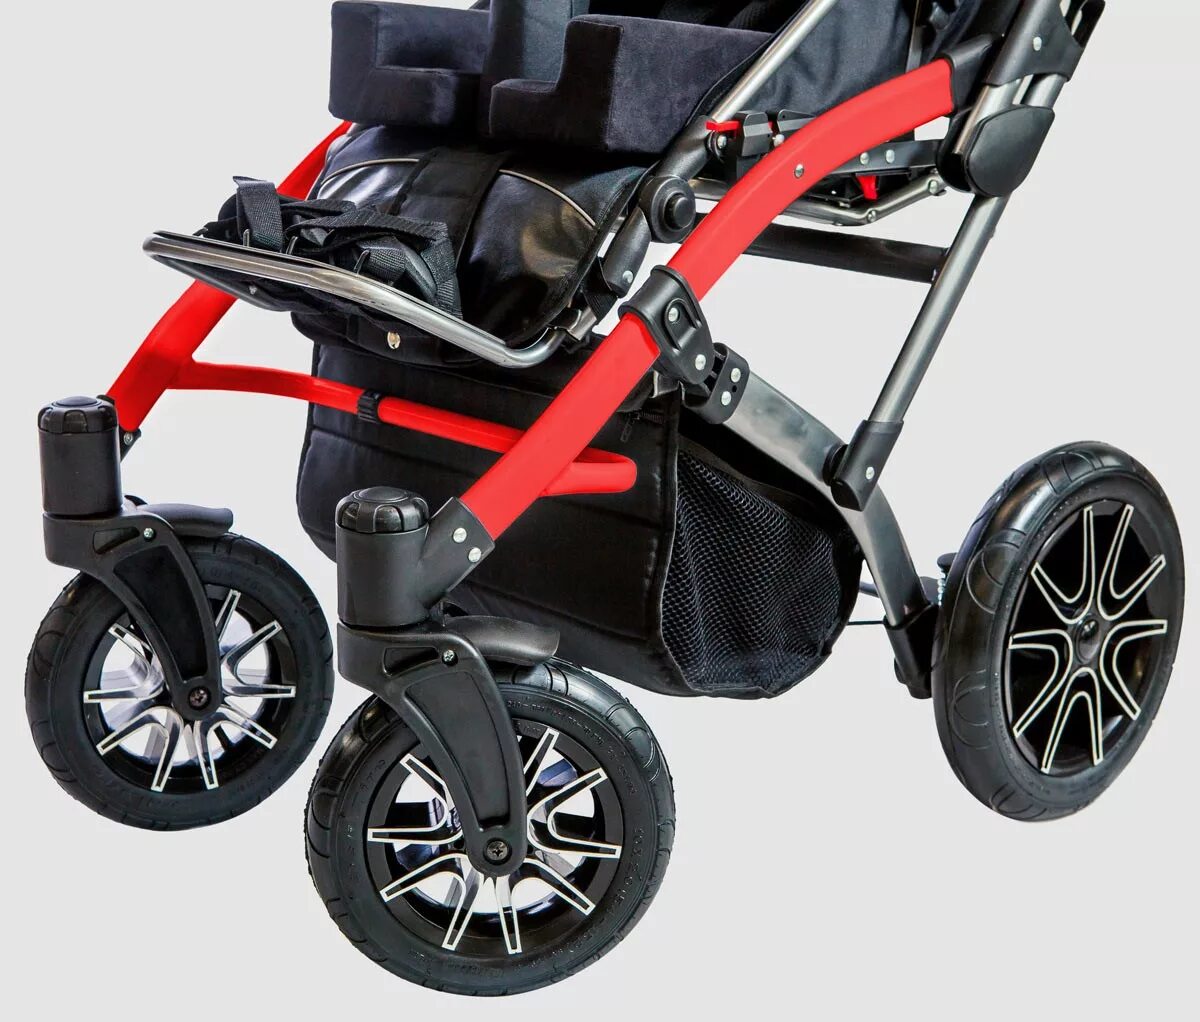 Купить коляску для дцп. Кресло-коляска для детей с ДЦП Akces-med Гиппо-2. Коляска инвалидная Гиппо 1. Кресло-коляска AKCESMED Гиппо. Гиппо коляска для ДЦП 1 размер.